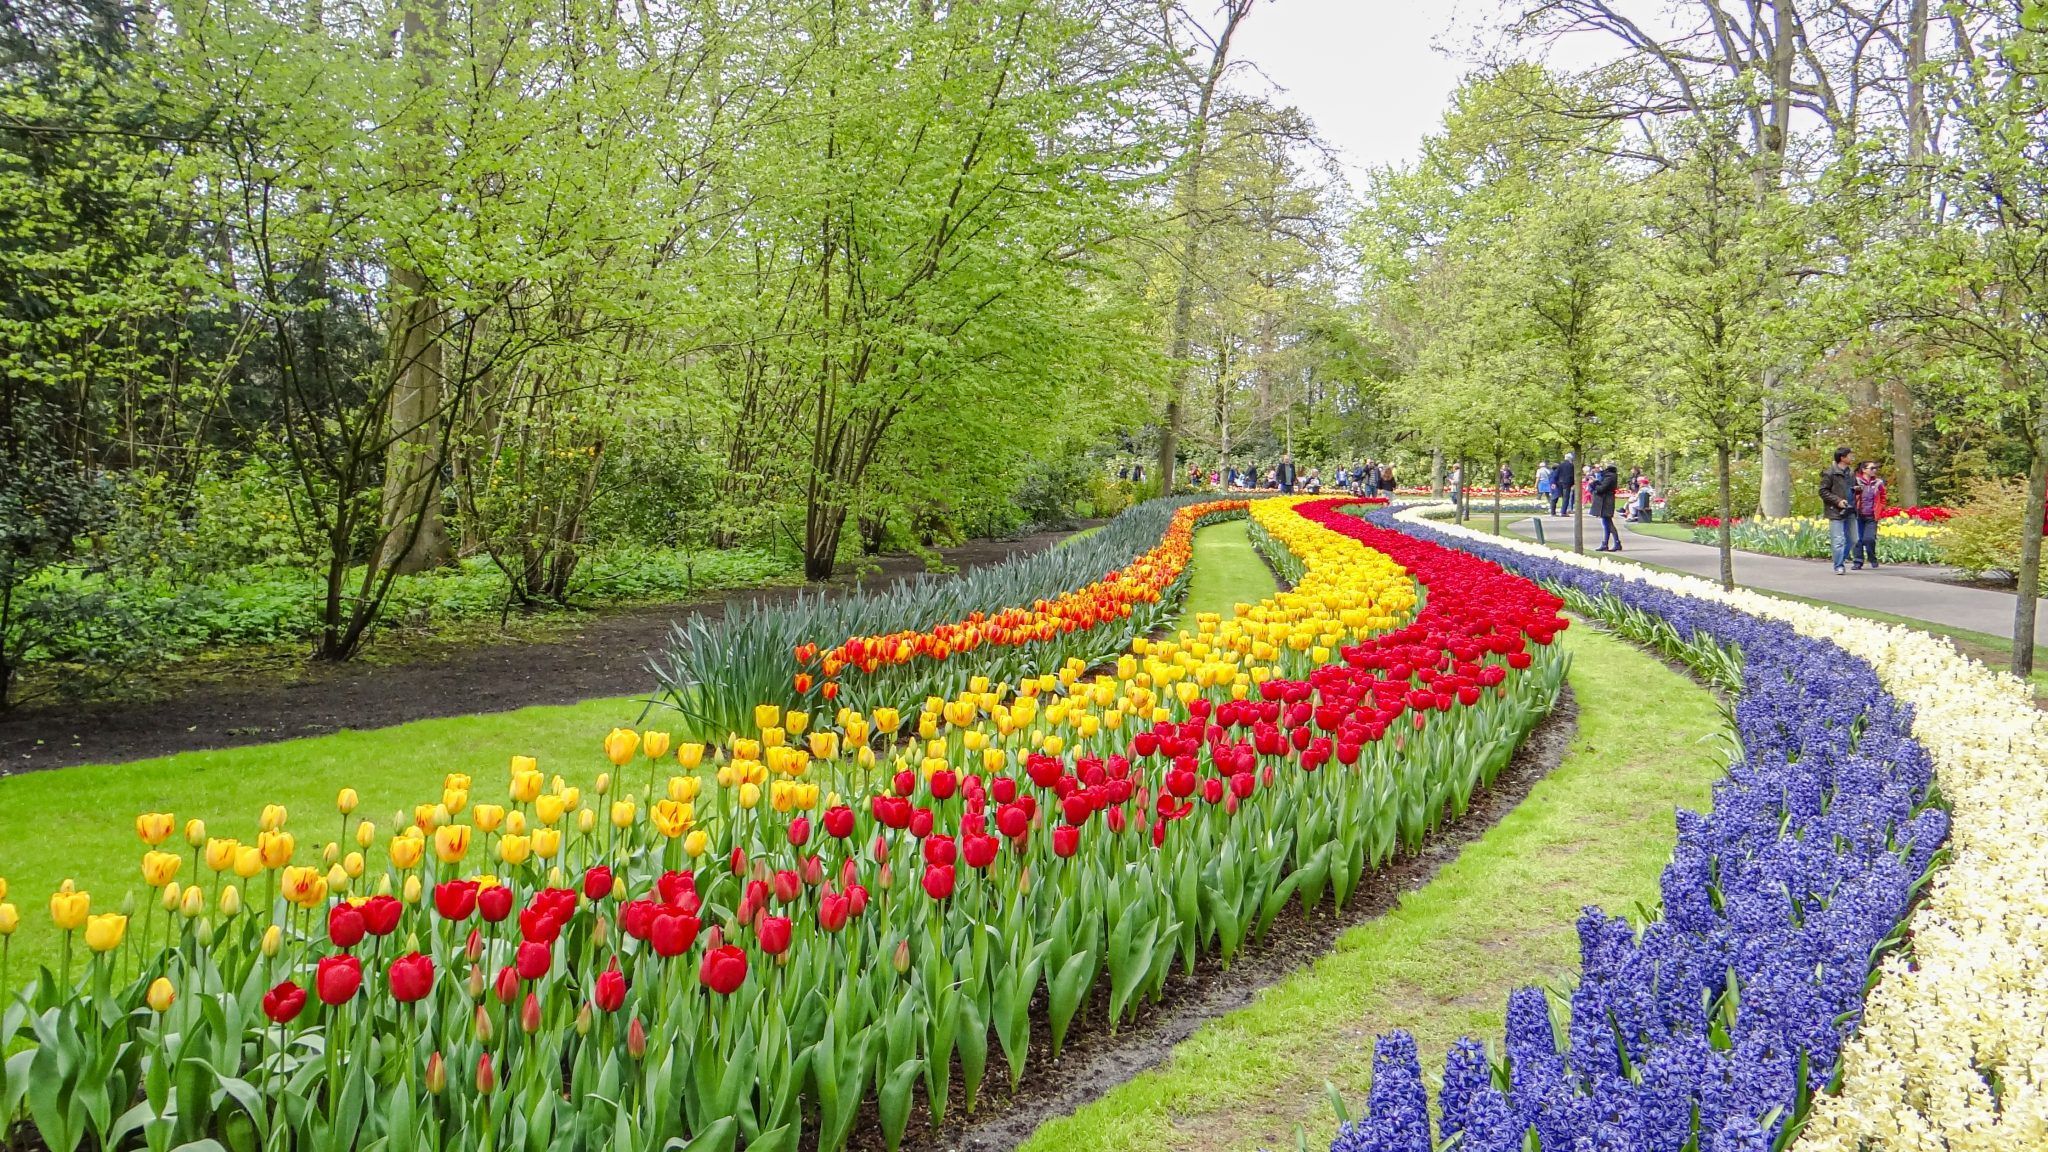 Keukenhof world's largest flower garden in Netherlands